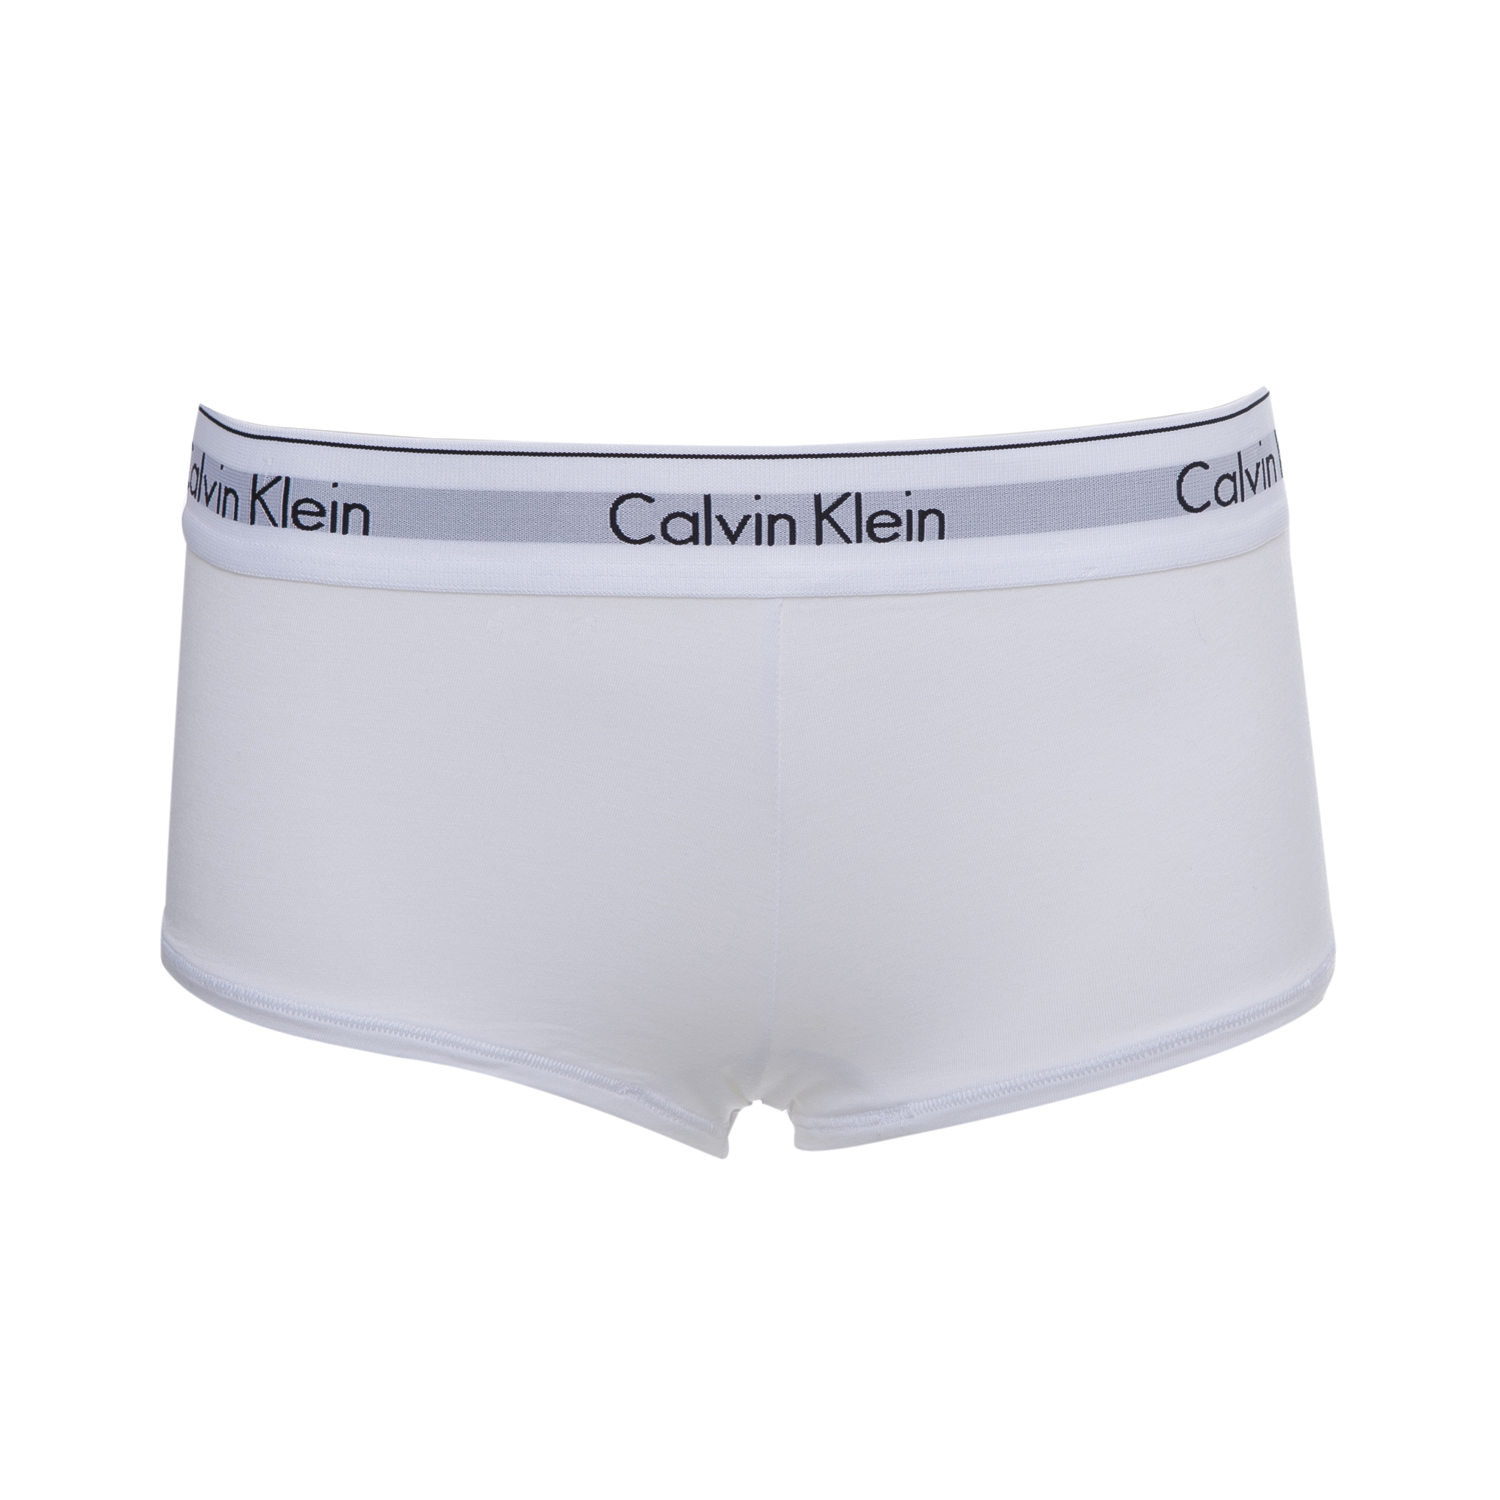 CK UNDERWEAR - Μπόξερ Calvin Klein λευκό Γυναικεία/Ρούχα/Εσώρουχα/Σλιπ